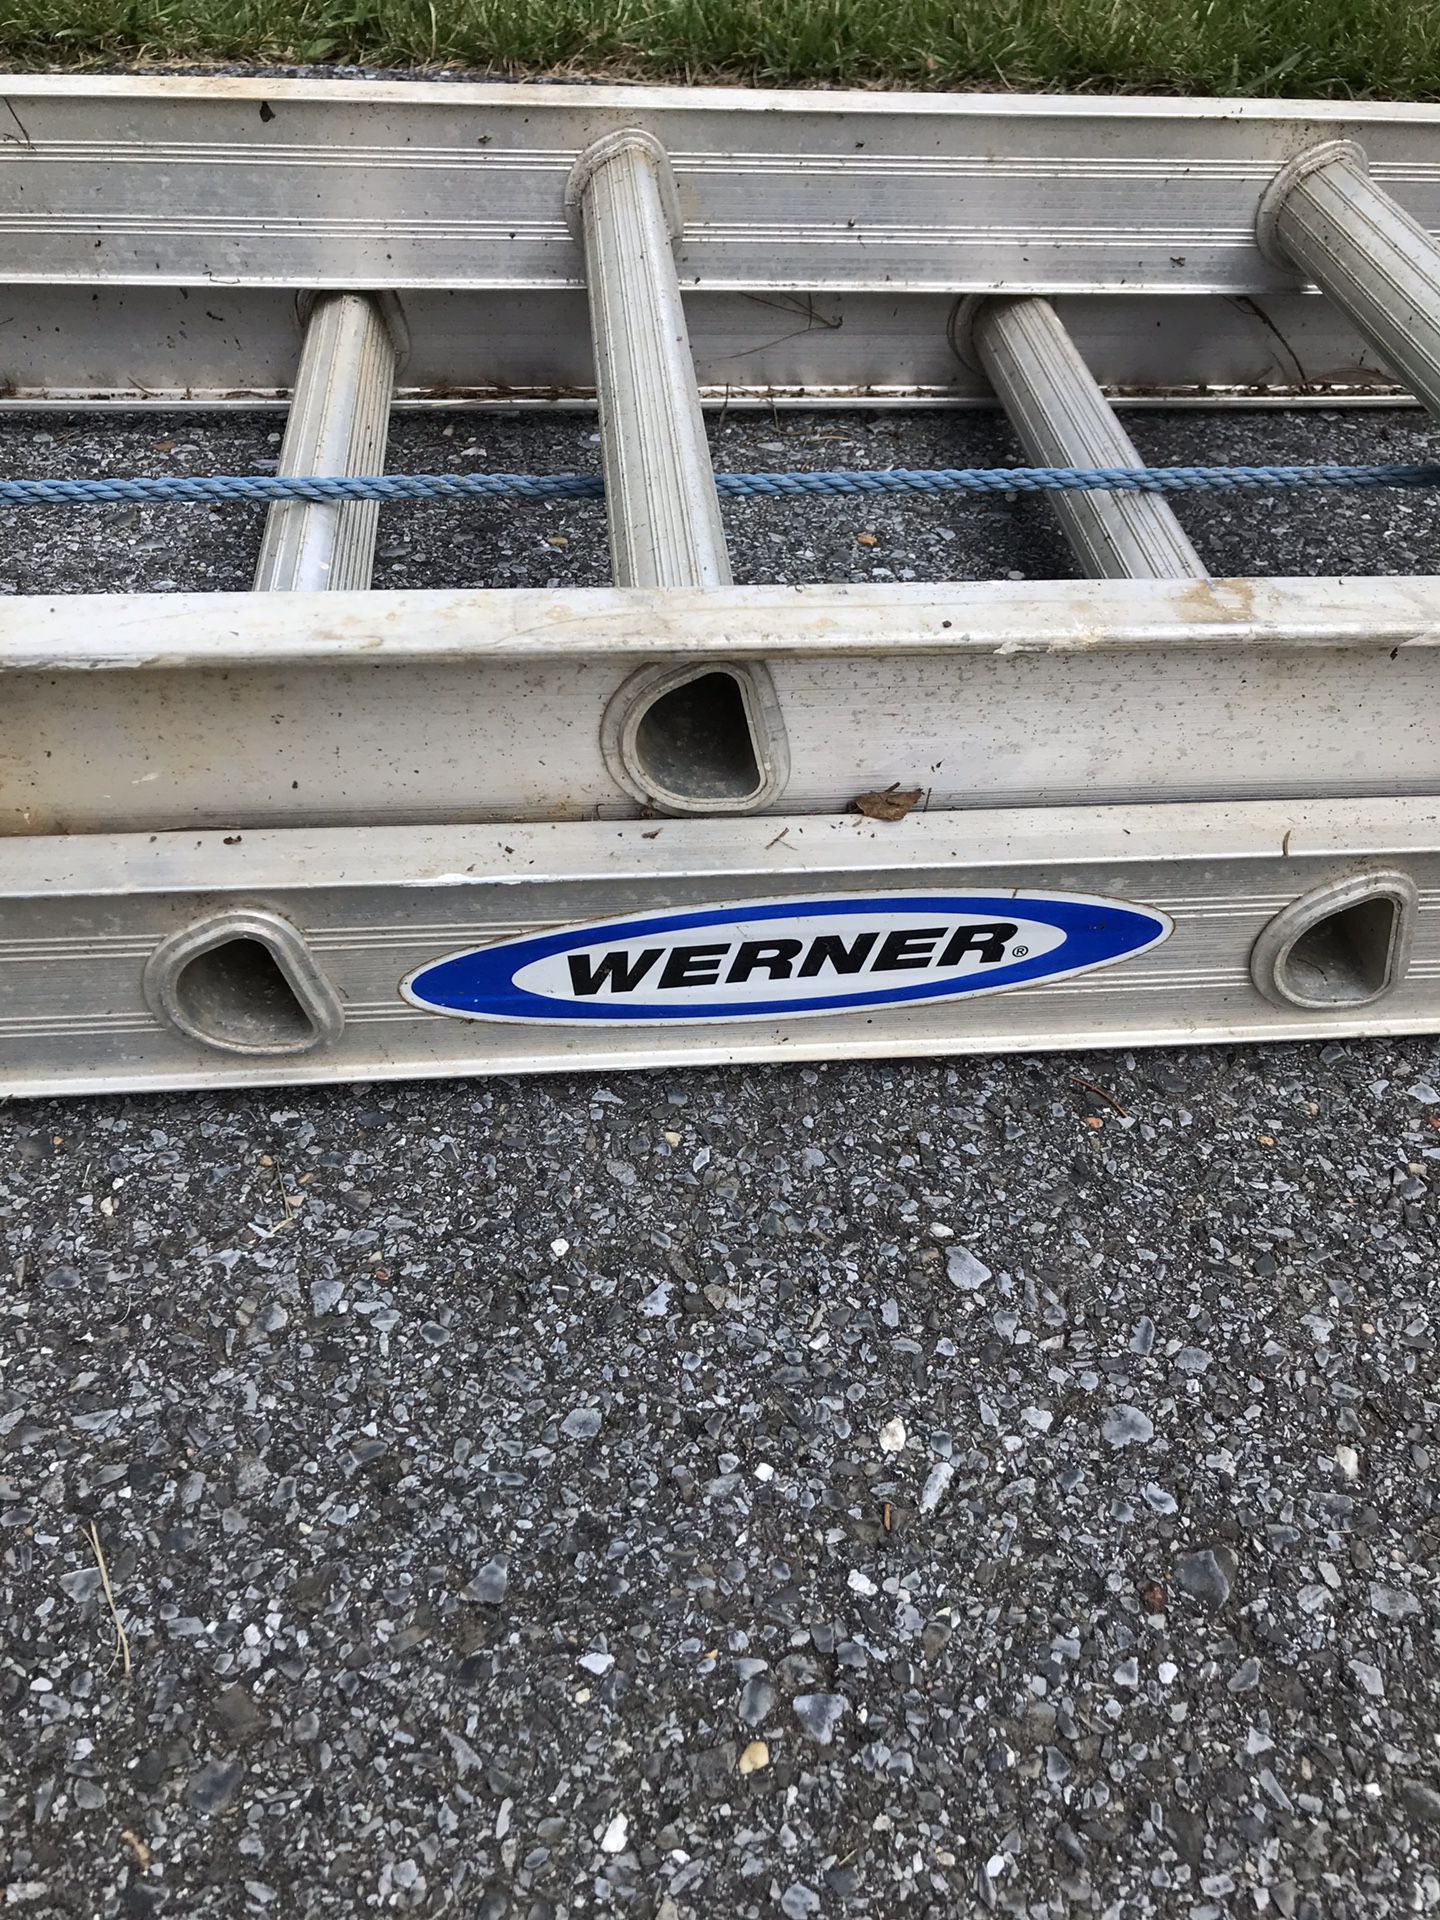 24 foot extension ladder (Werner)